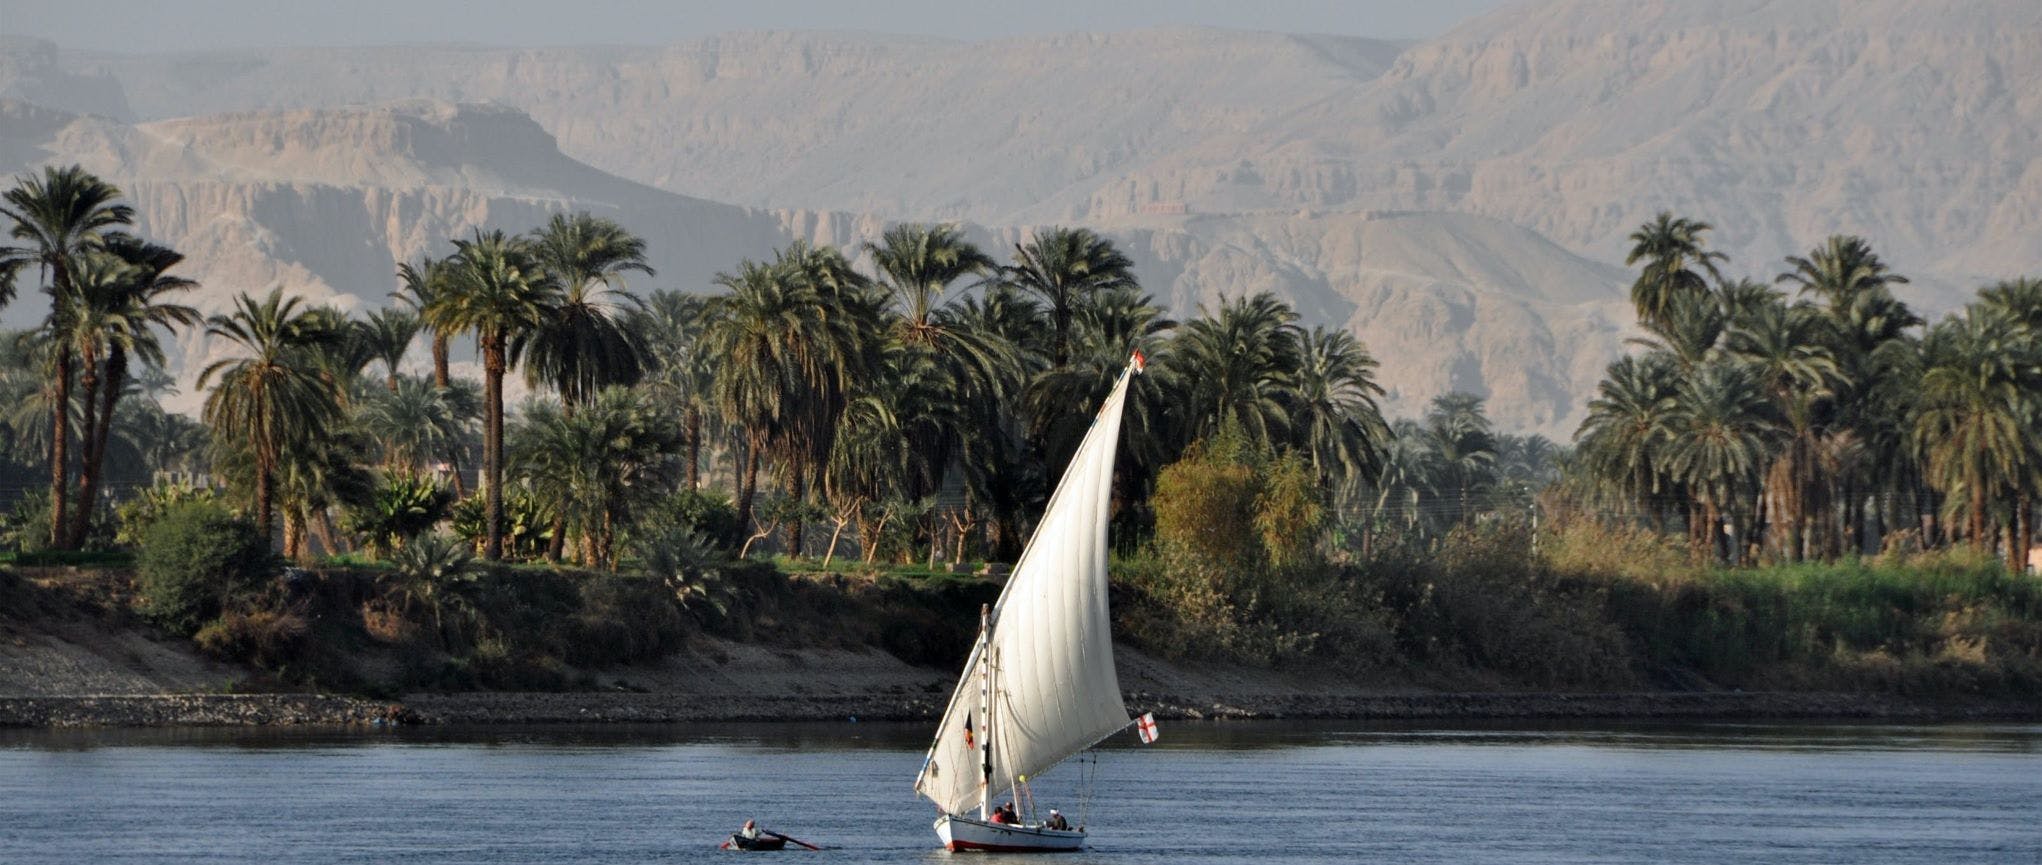 Sunset Banana Island Nile-Erlebnis an Bord einer Feluke von Luxor aus